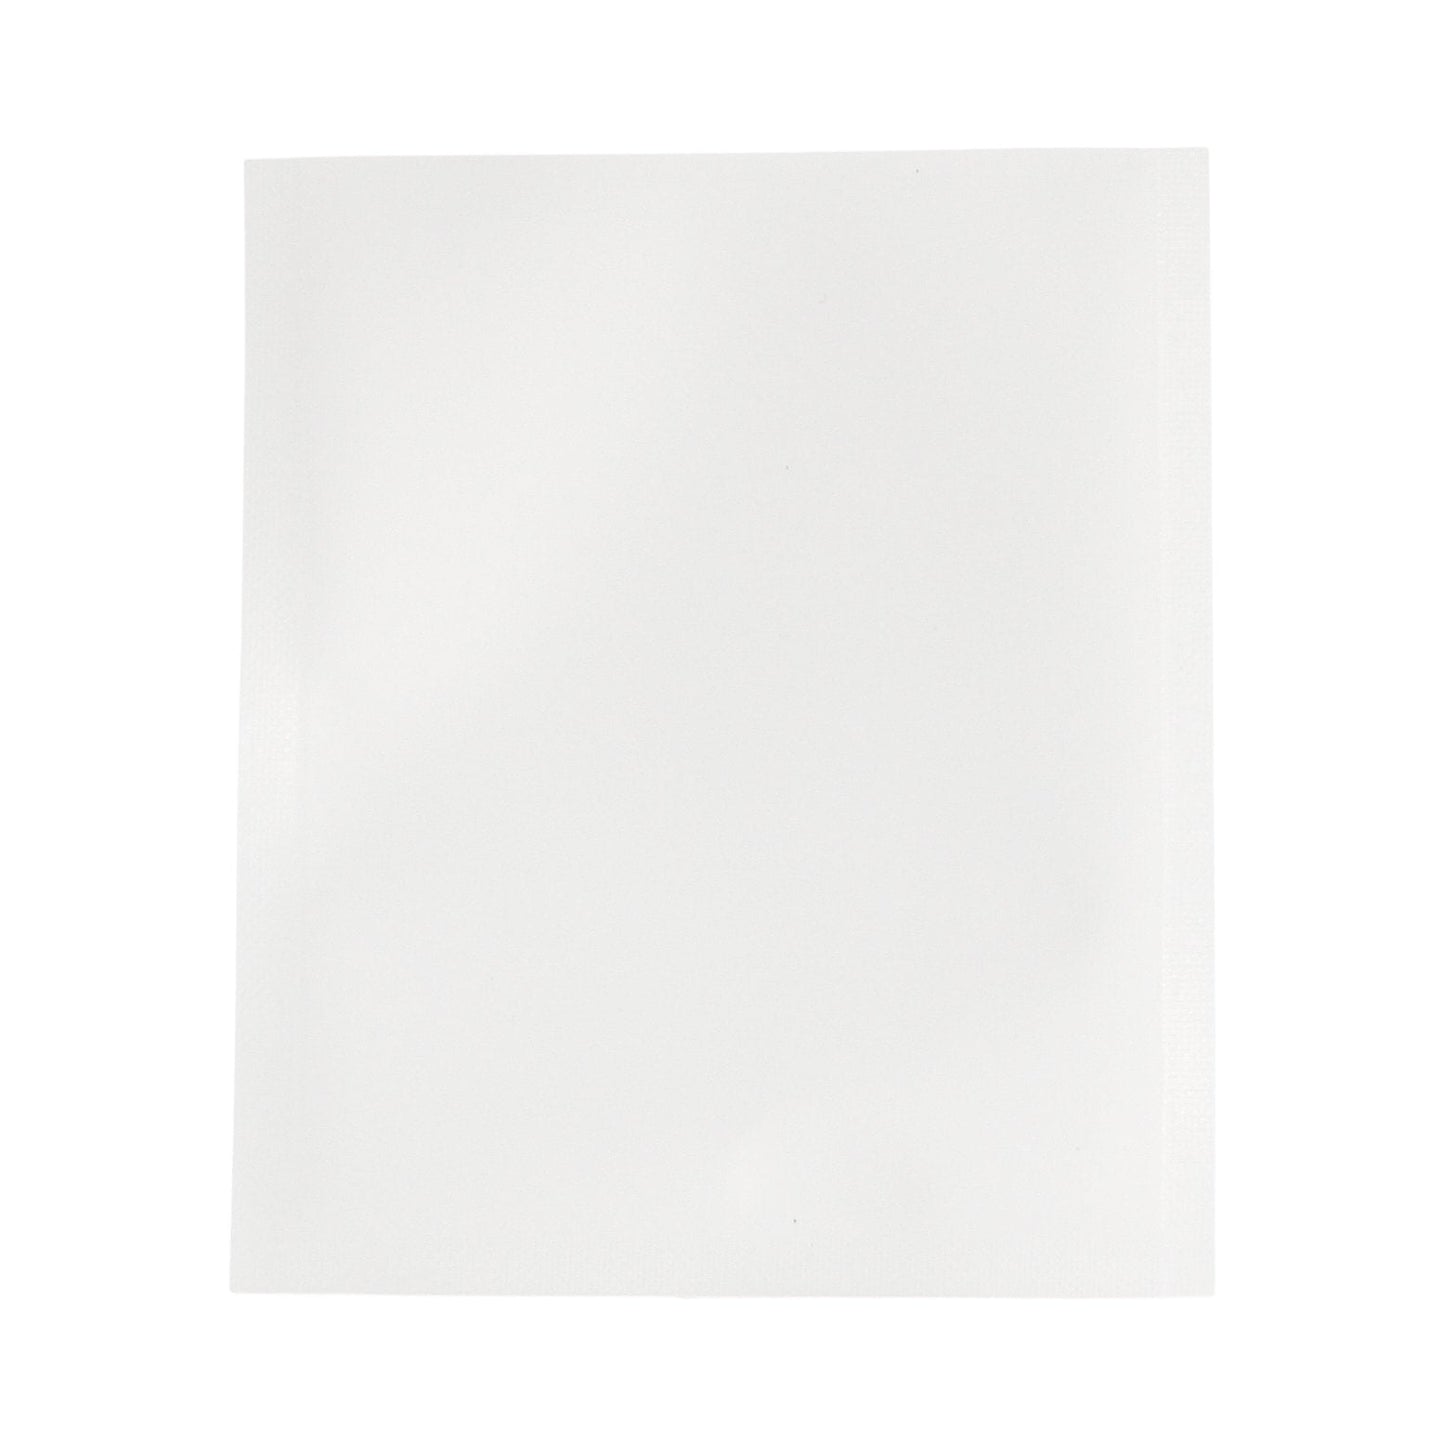 Matte White Bag King Single Use Heat Seal Mylar Bag (3.25" x 3.75")